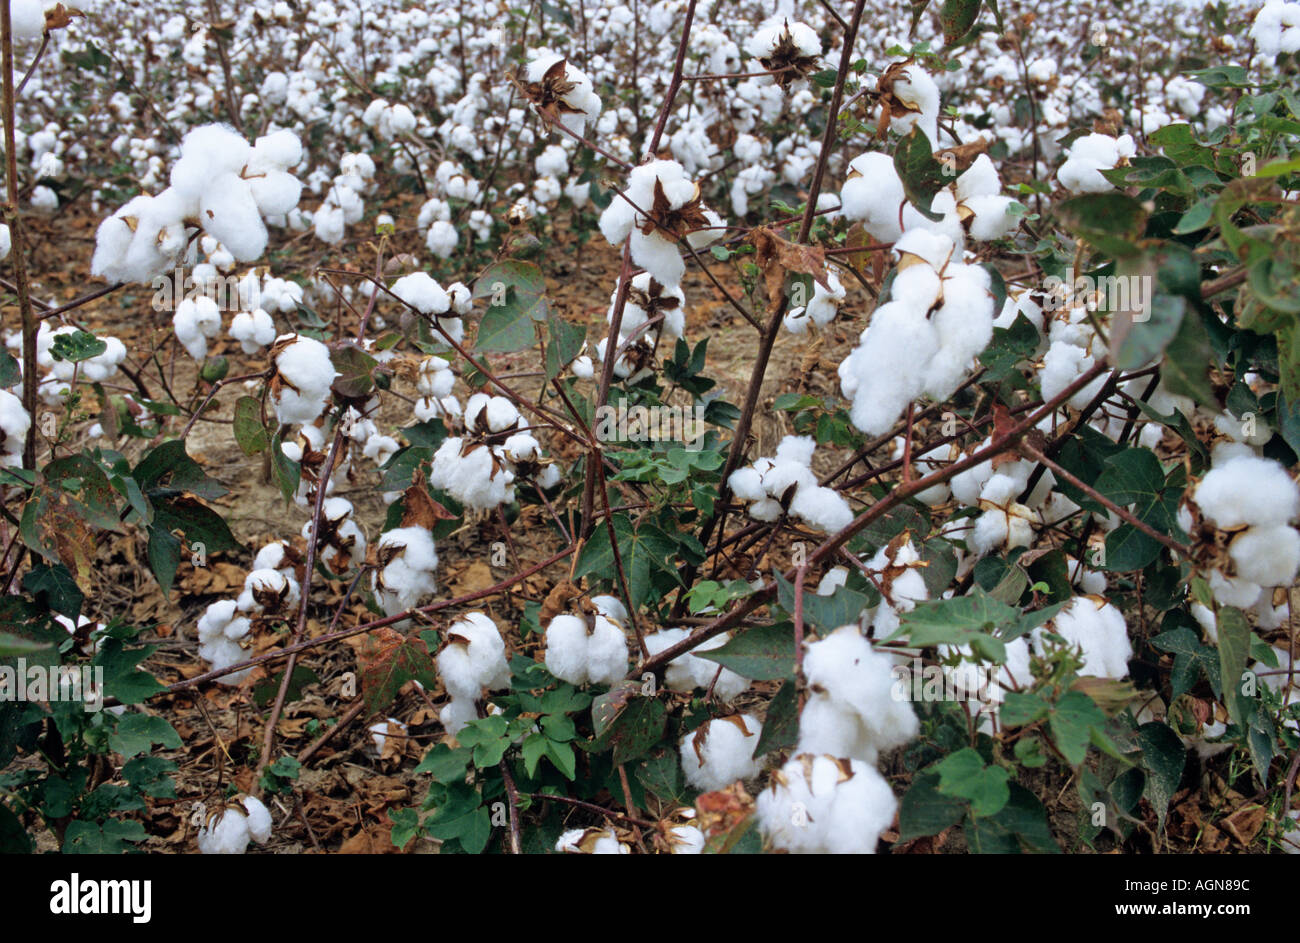 Baumwolle in Mississippi bereits gesprüht, um die Blätter zu töten erwartet Kommissionierung von Maschine Stockfoto